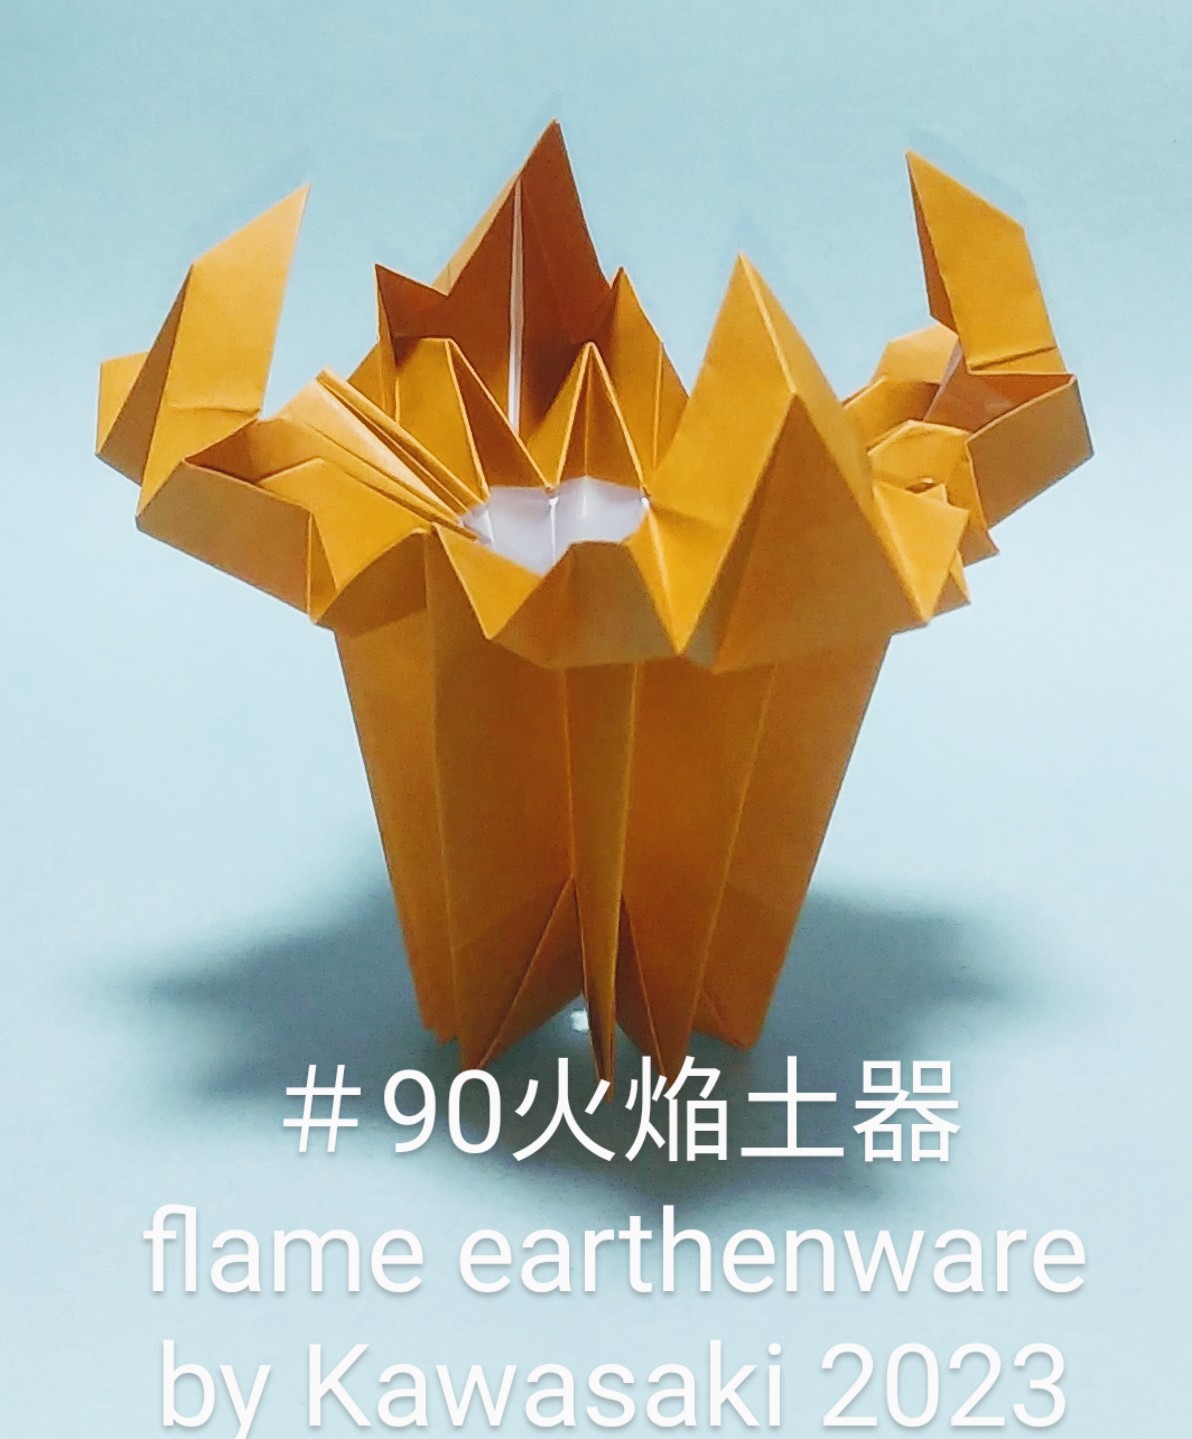 2023/10/06(Fri) 22:31「＃90火焔土器 flame earthenware  (作2023年10月6日22:15)」川崎敏和 T.Kawasaki
（創作者 Author：川崎敏和 T.Kawasaki,　製作者 Folder：川崎敏和 T.Kawasaki ,　出典 Source：2023年川崎敏和折り紙キット＃90）
 永年のテーマ火焔土器がようやくできました。4枚組ユニットです。